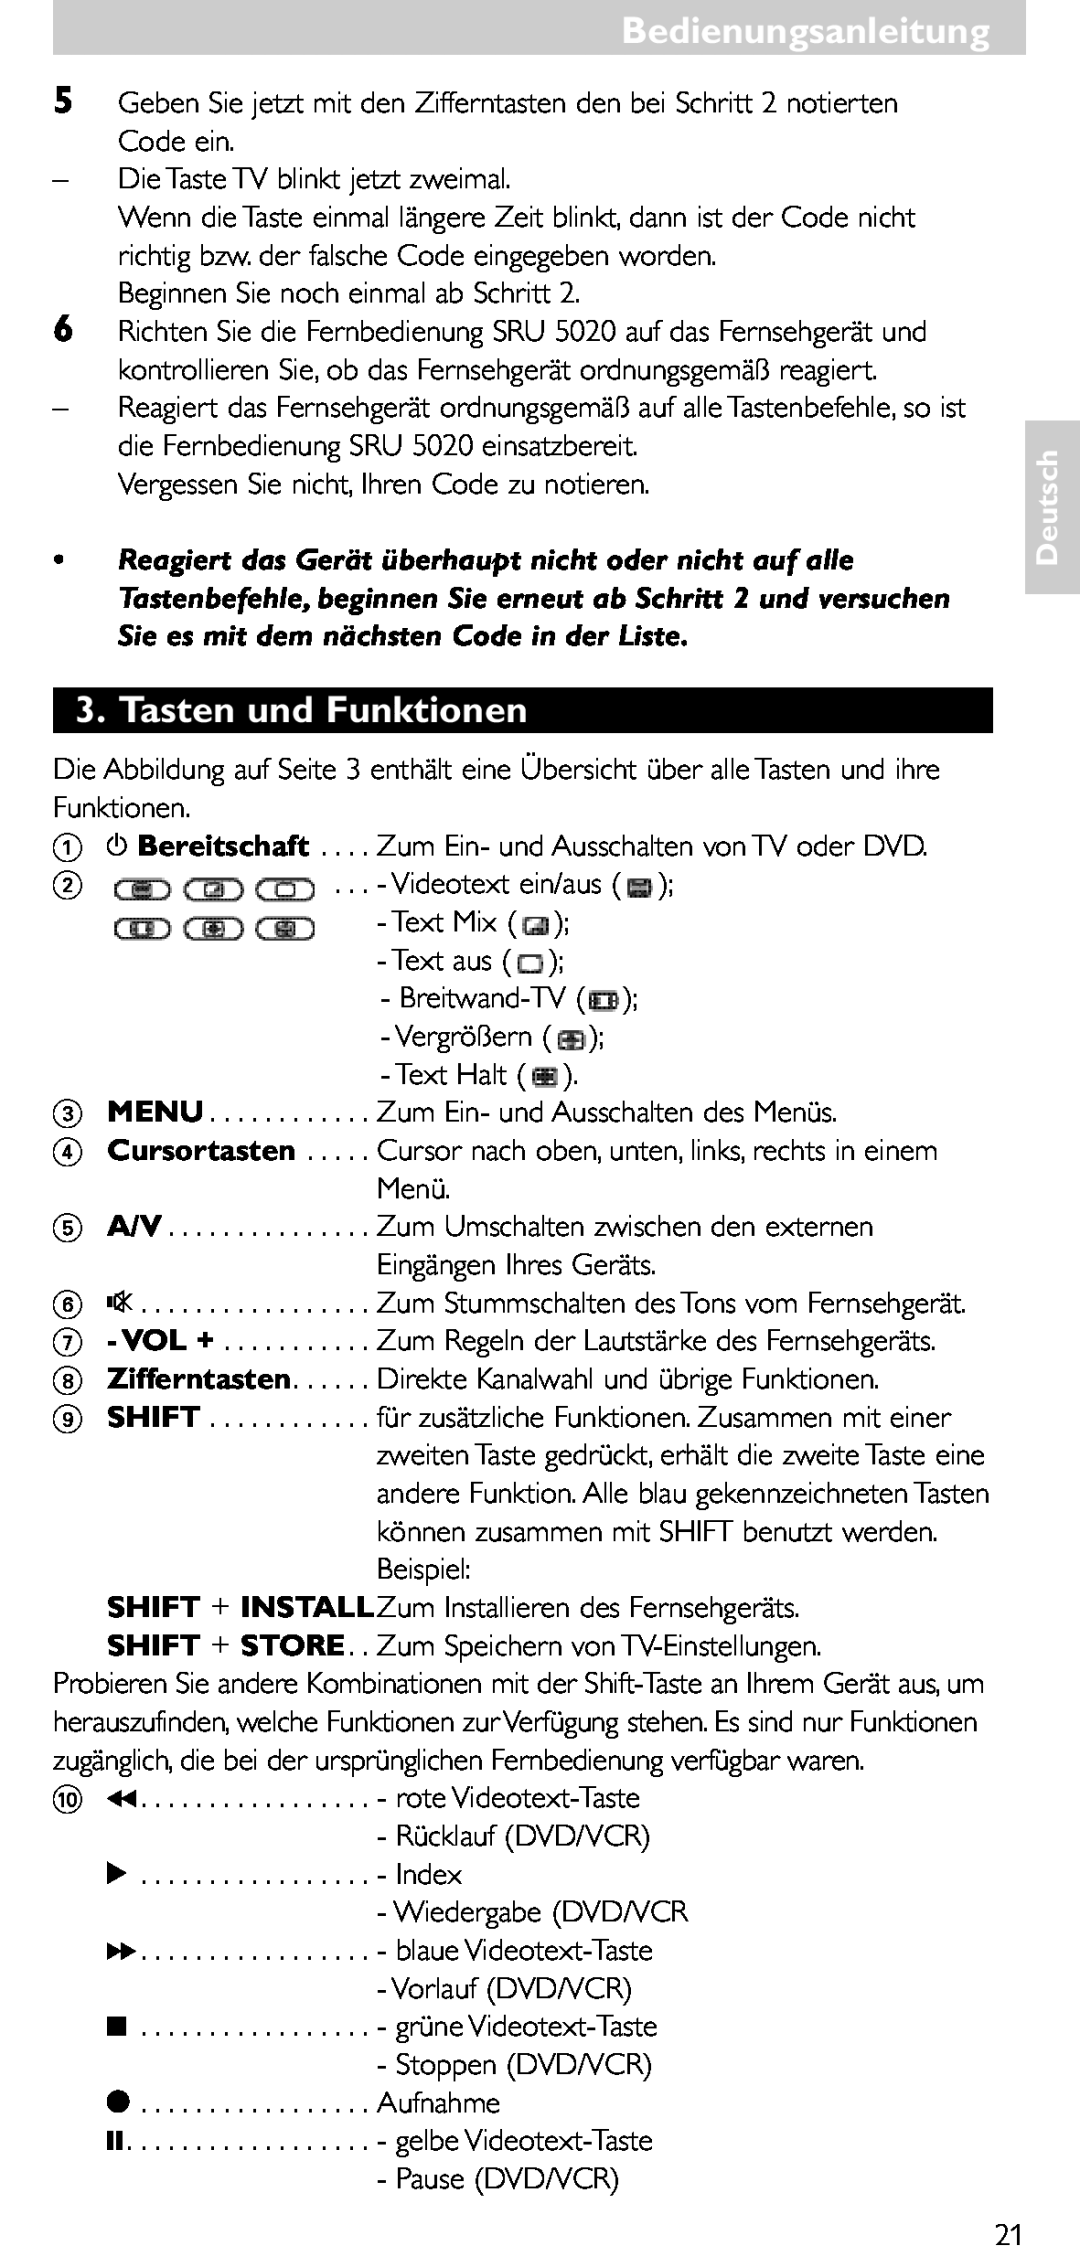 Philips SRU 5020/86 manual Tasten und Funktionen, Shift + Store, Bedienungsanleitung, Deutsch 